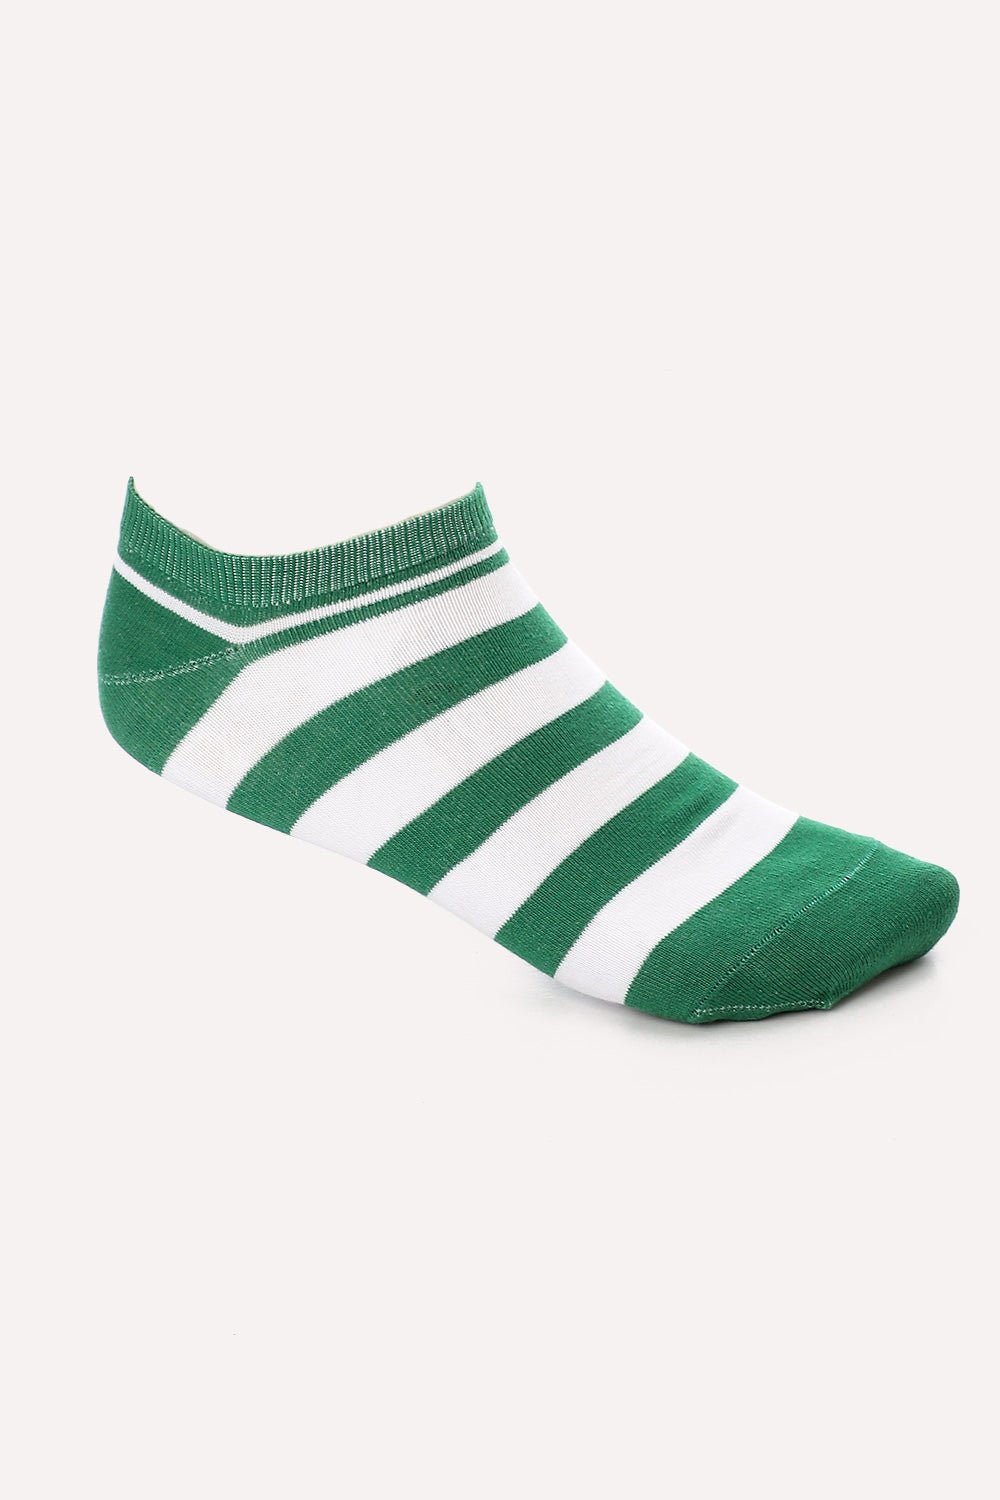 Bi-Tone Striped Ankle Socks